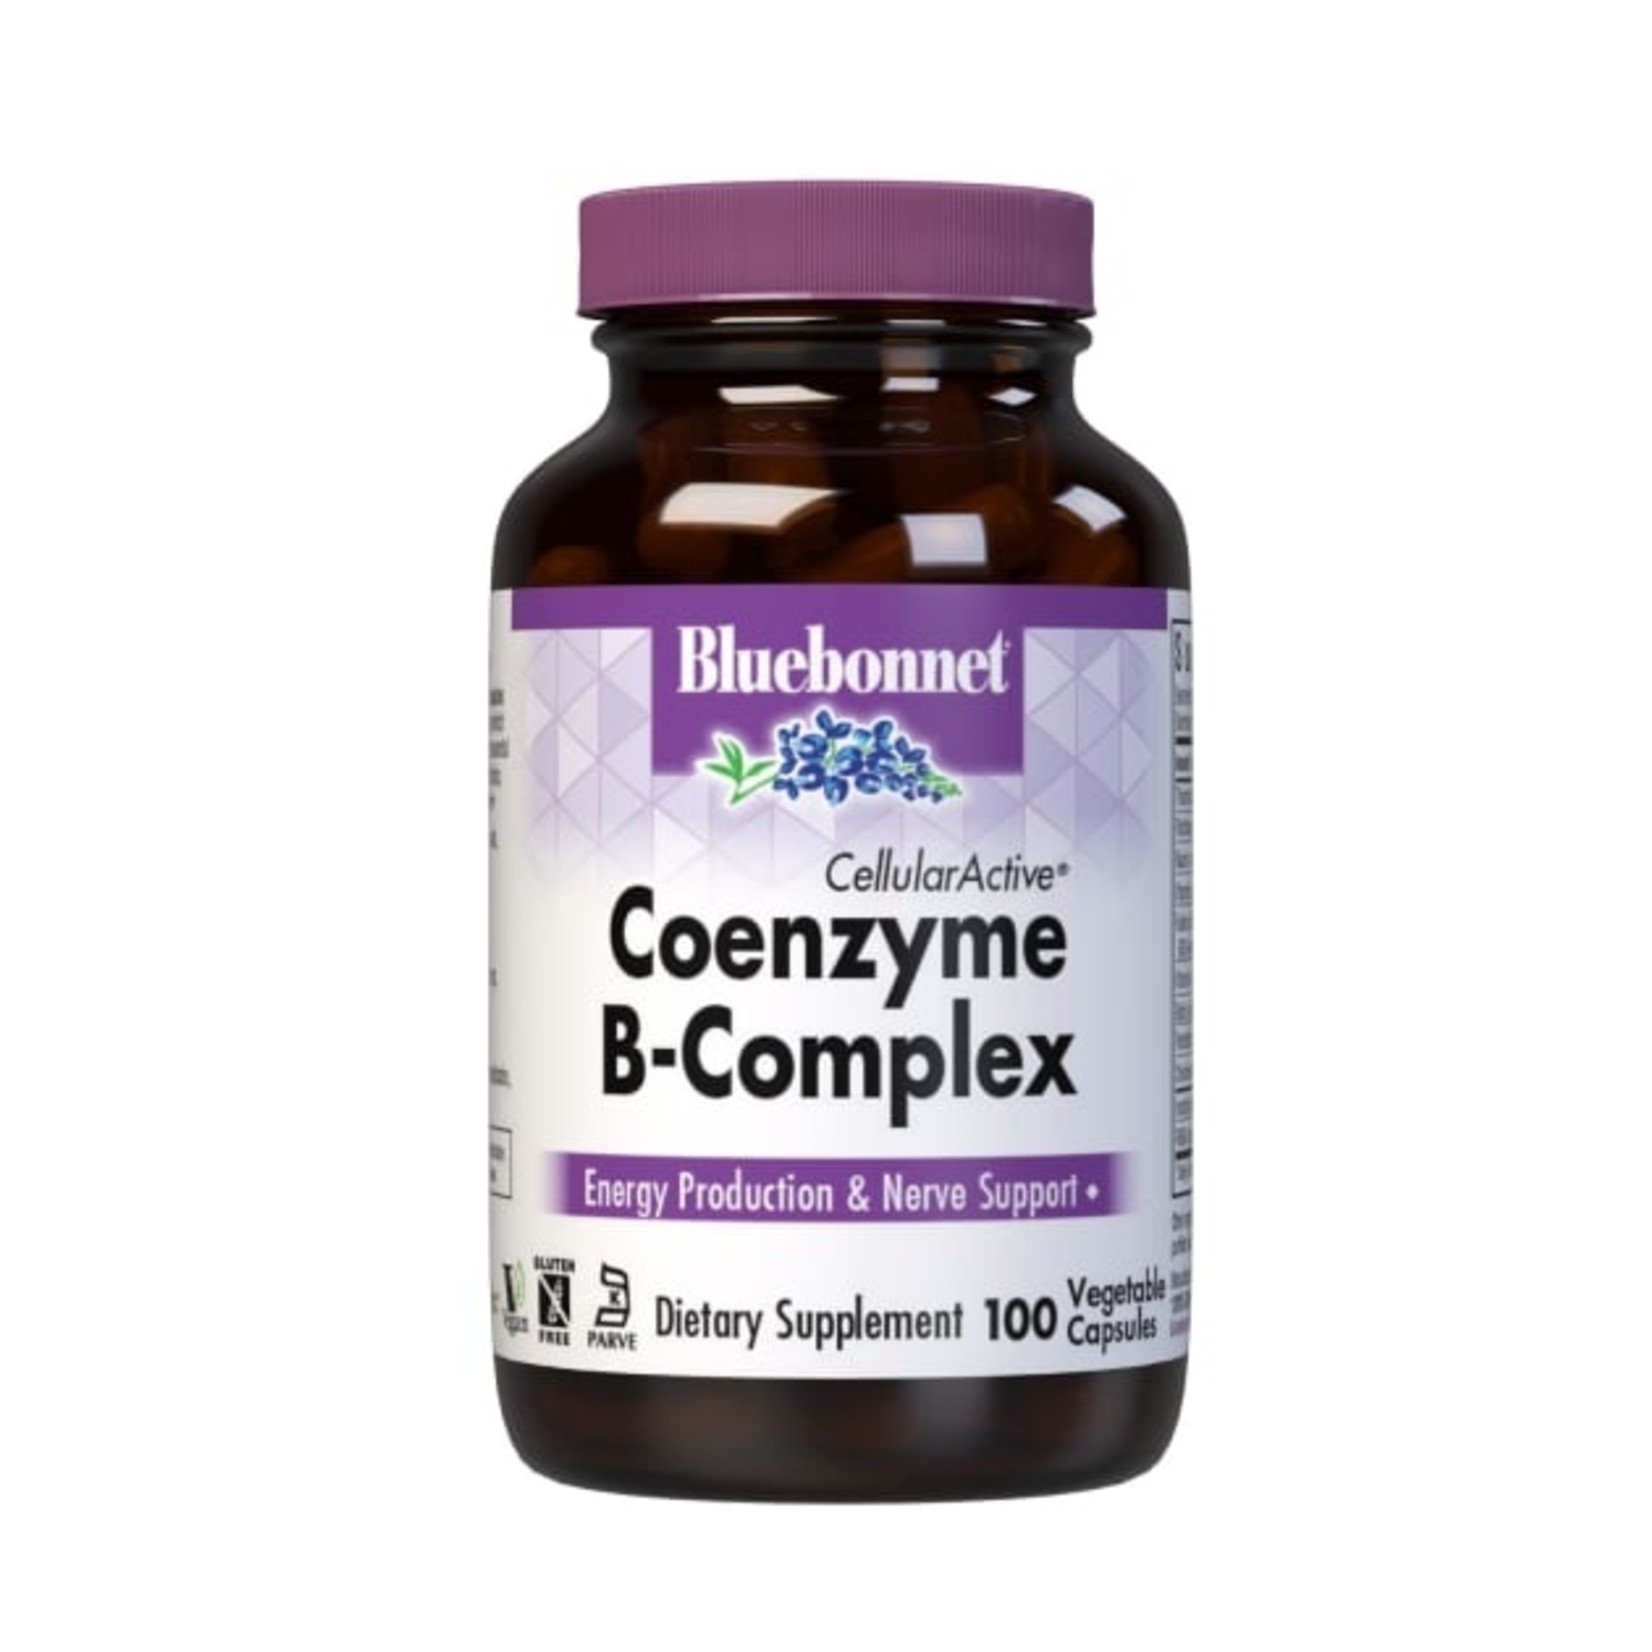 Bluebonnet Bluebonnet - Coenzyme B-Complex - 100 Veg Capsules